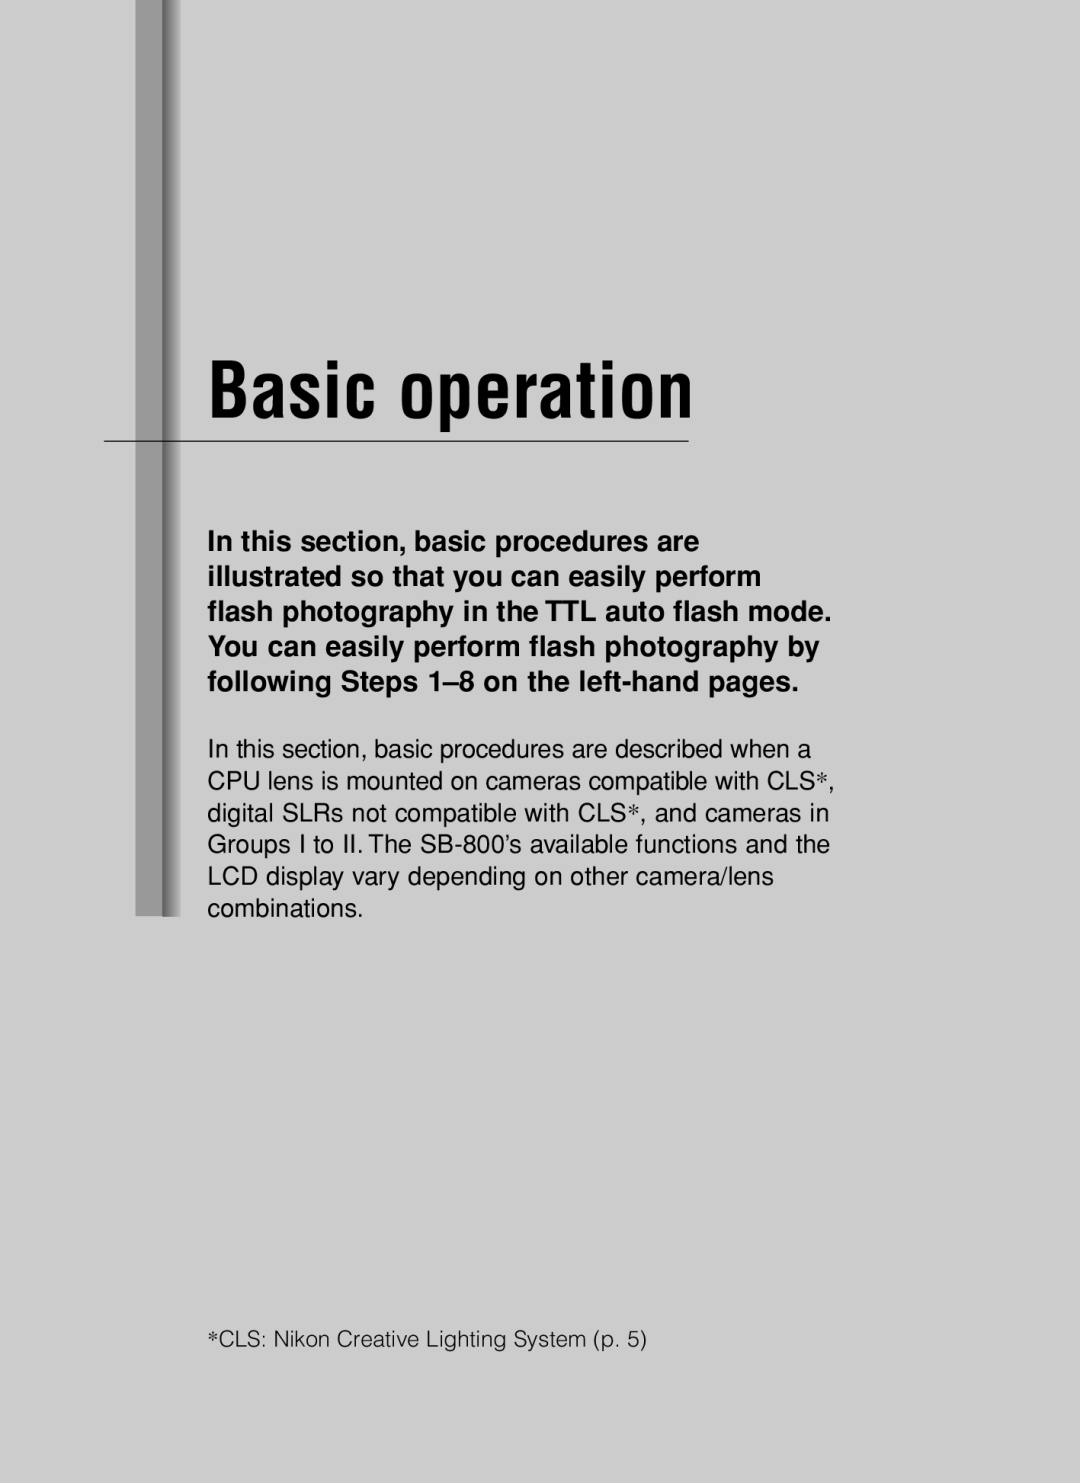 Nikon SB-800 instruction manual Basic operation 